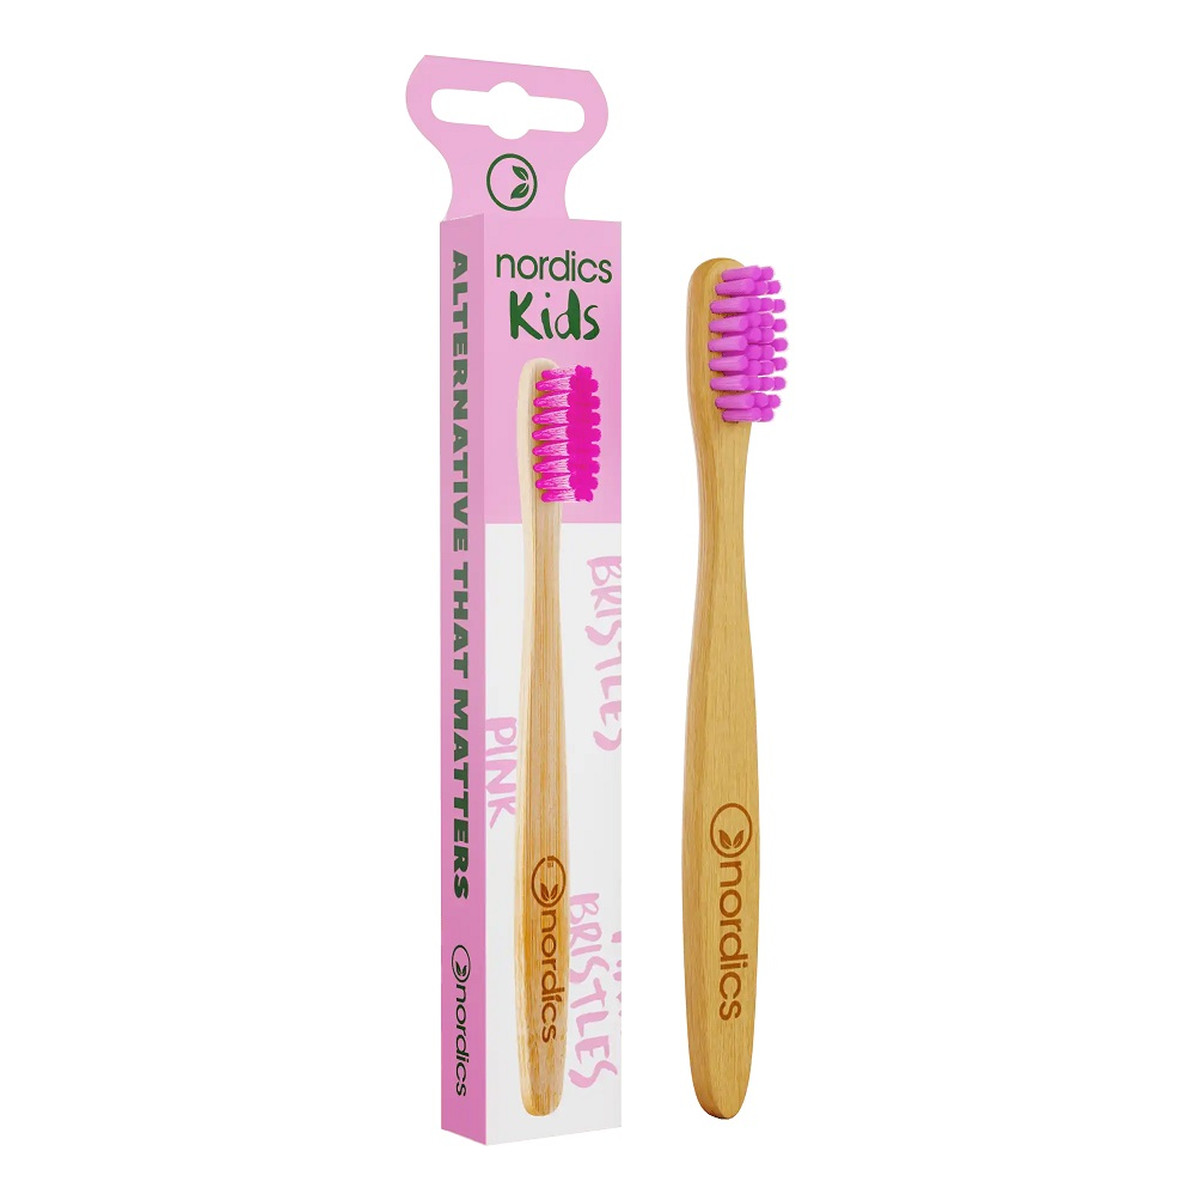 Nordics Kids bamboo toothbrush bambusowa szczoteczka do zębów dla dzieci pink